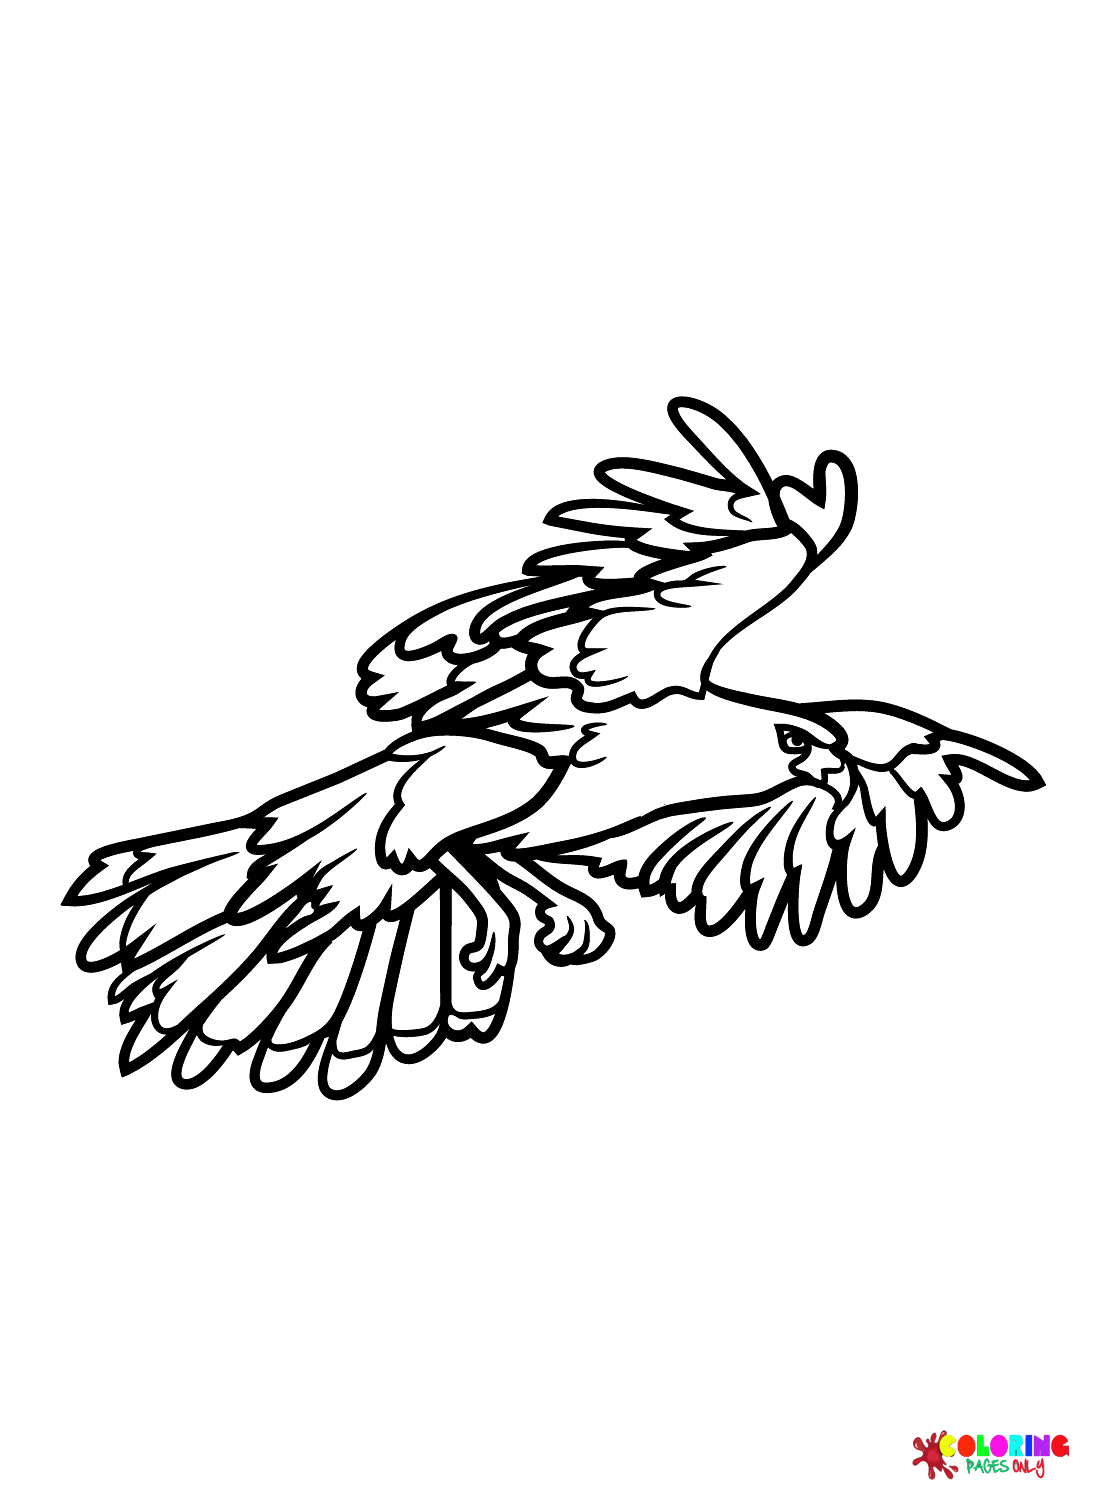 Falkenbilder von Falken